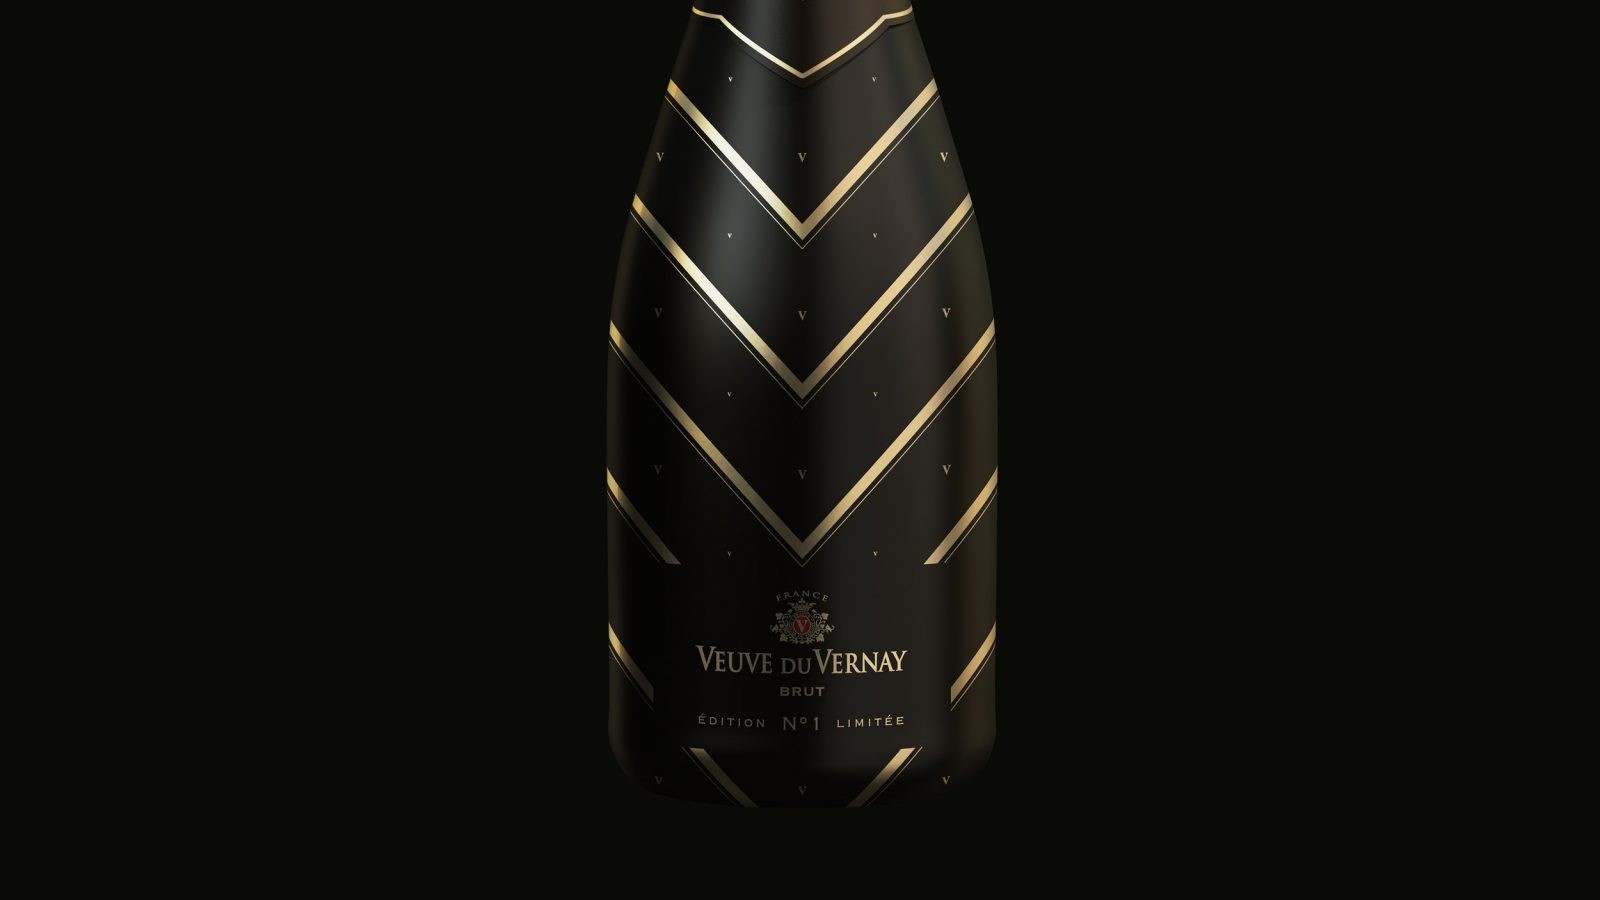 Bottle Sleeve Design for Limited International Edition Veuve du Vernay